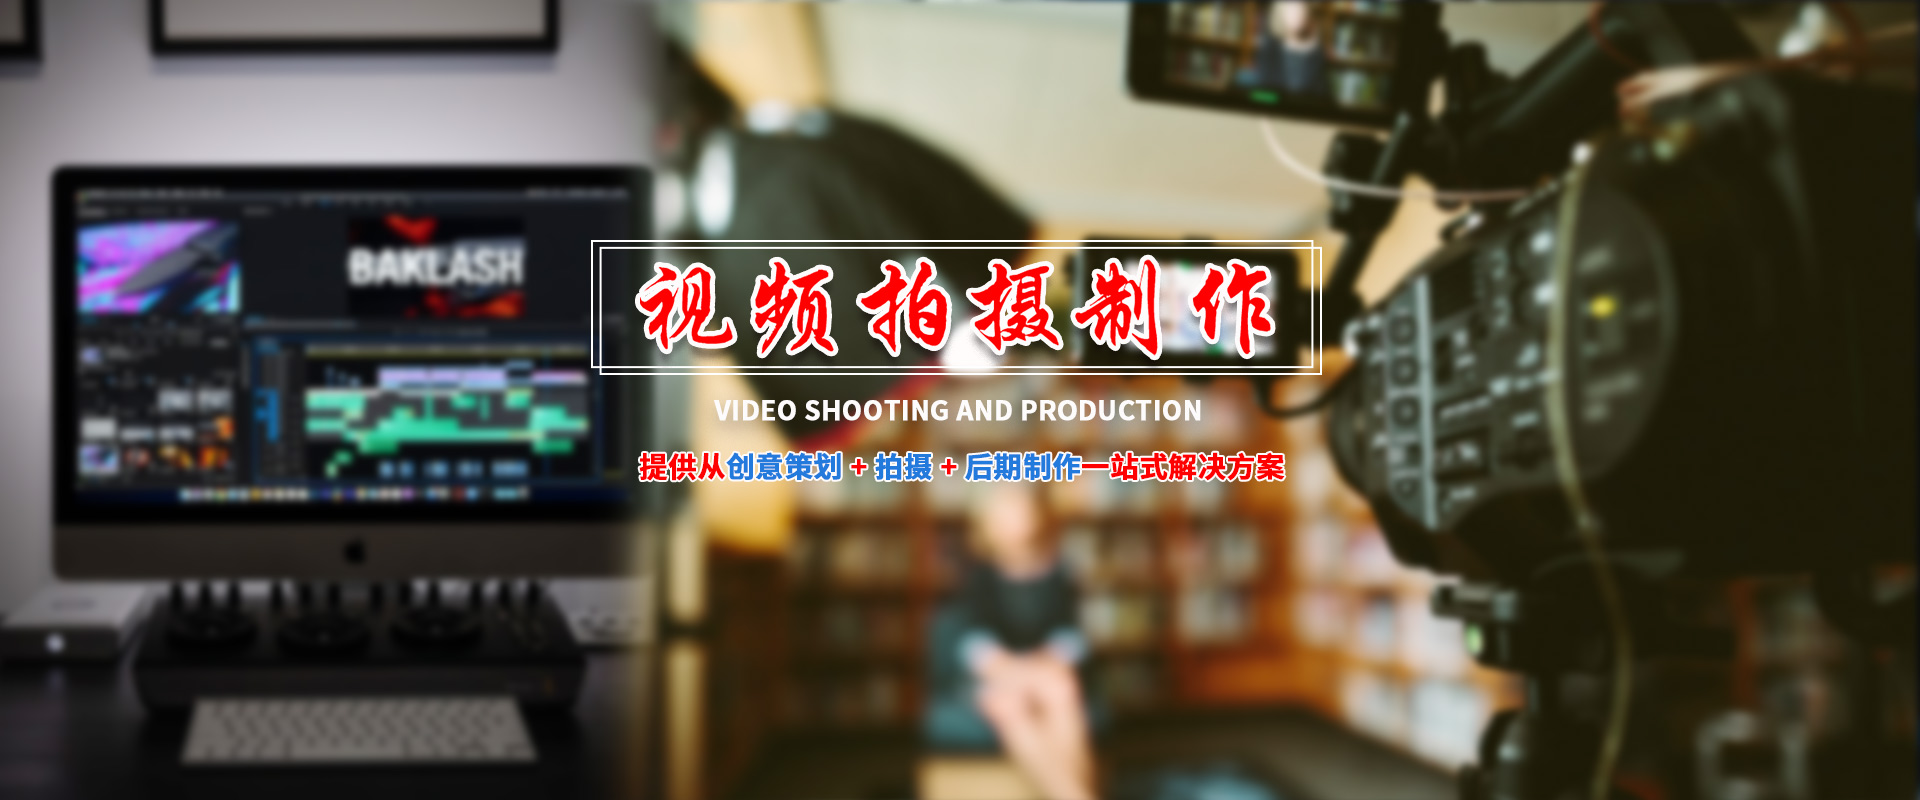 昆明短視頻運營,雲南短視頻推廣,昆明網絡營銷